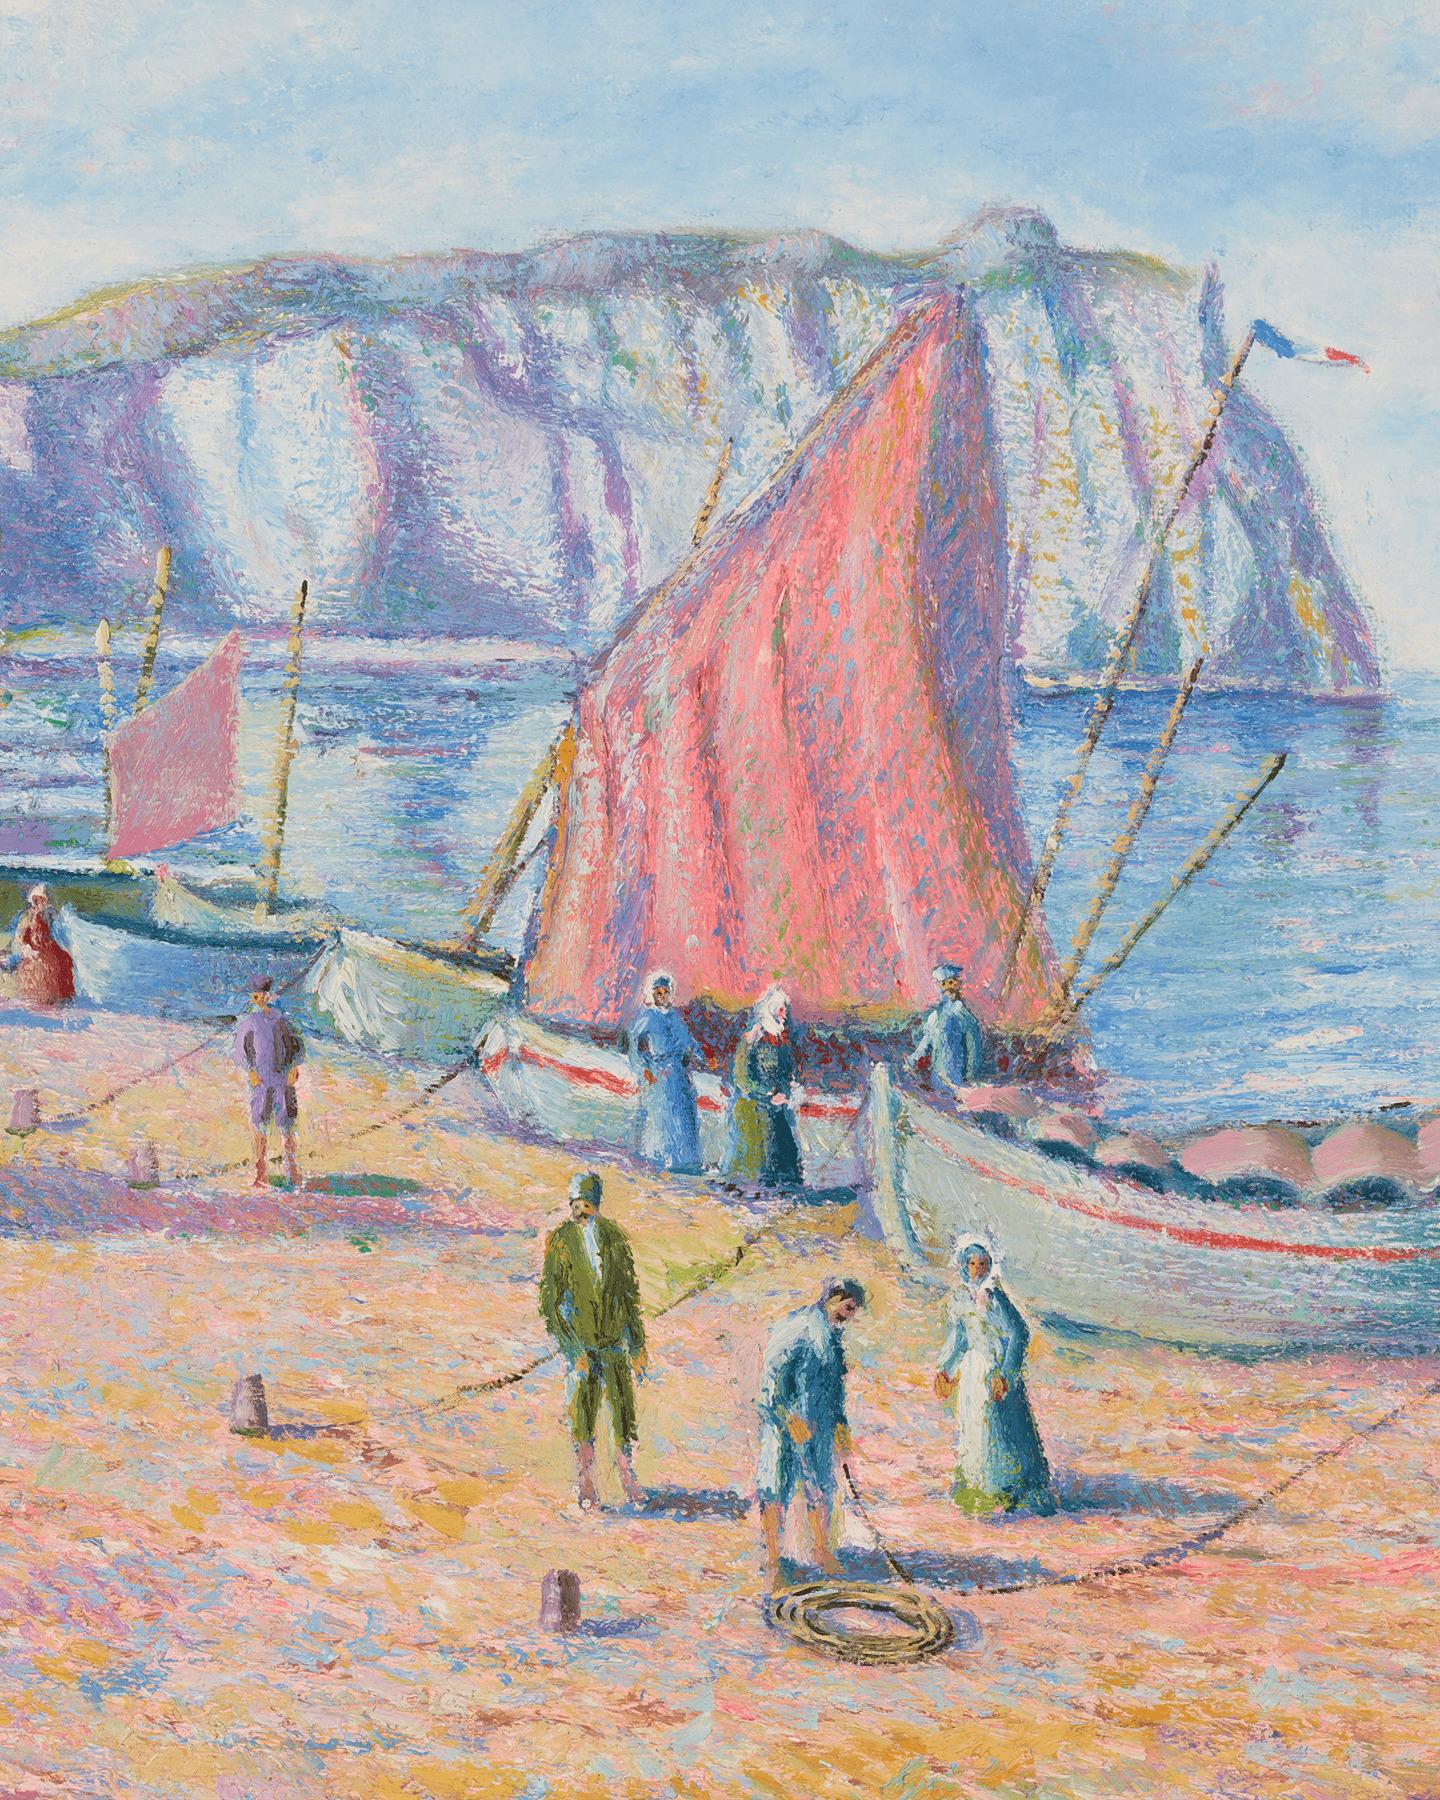 Barques de Pêcheurs à Étretat (Fishing Boats in Étretat) - Post-Impressionist Painting by Hughes Claude Pissarro